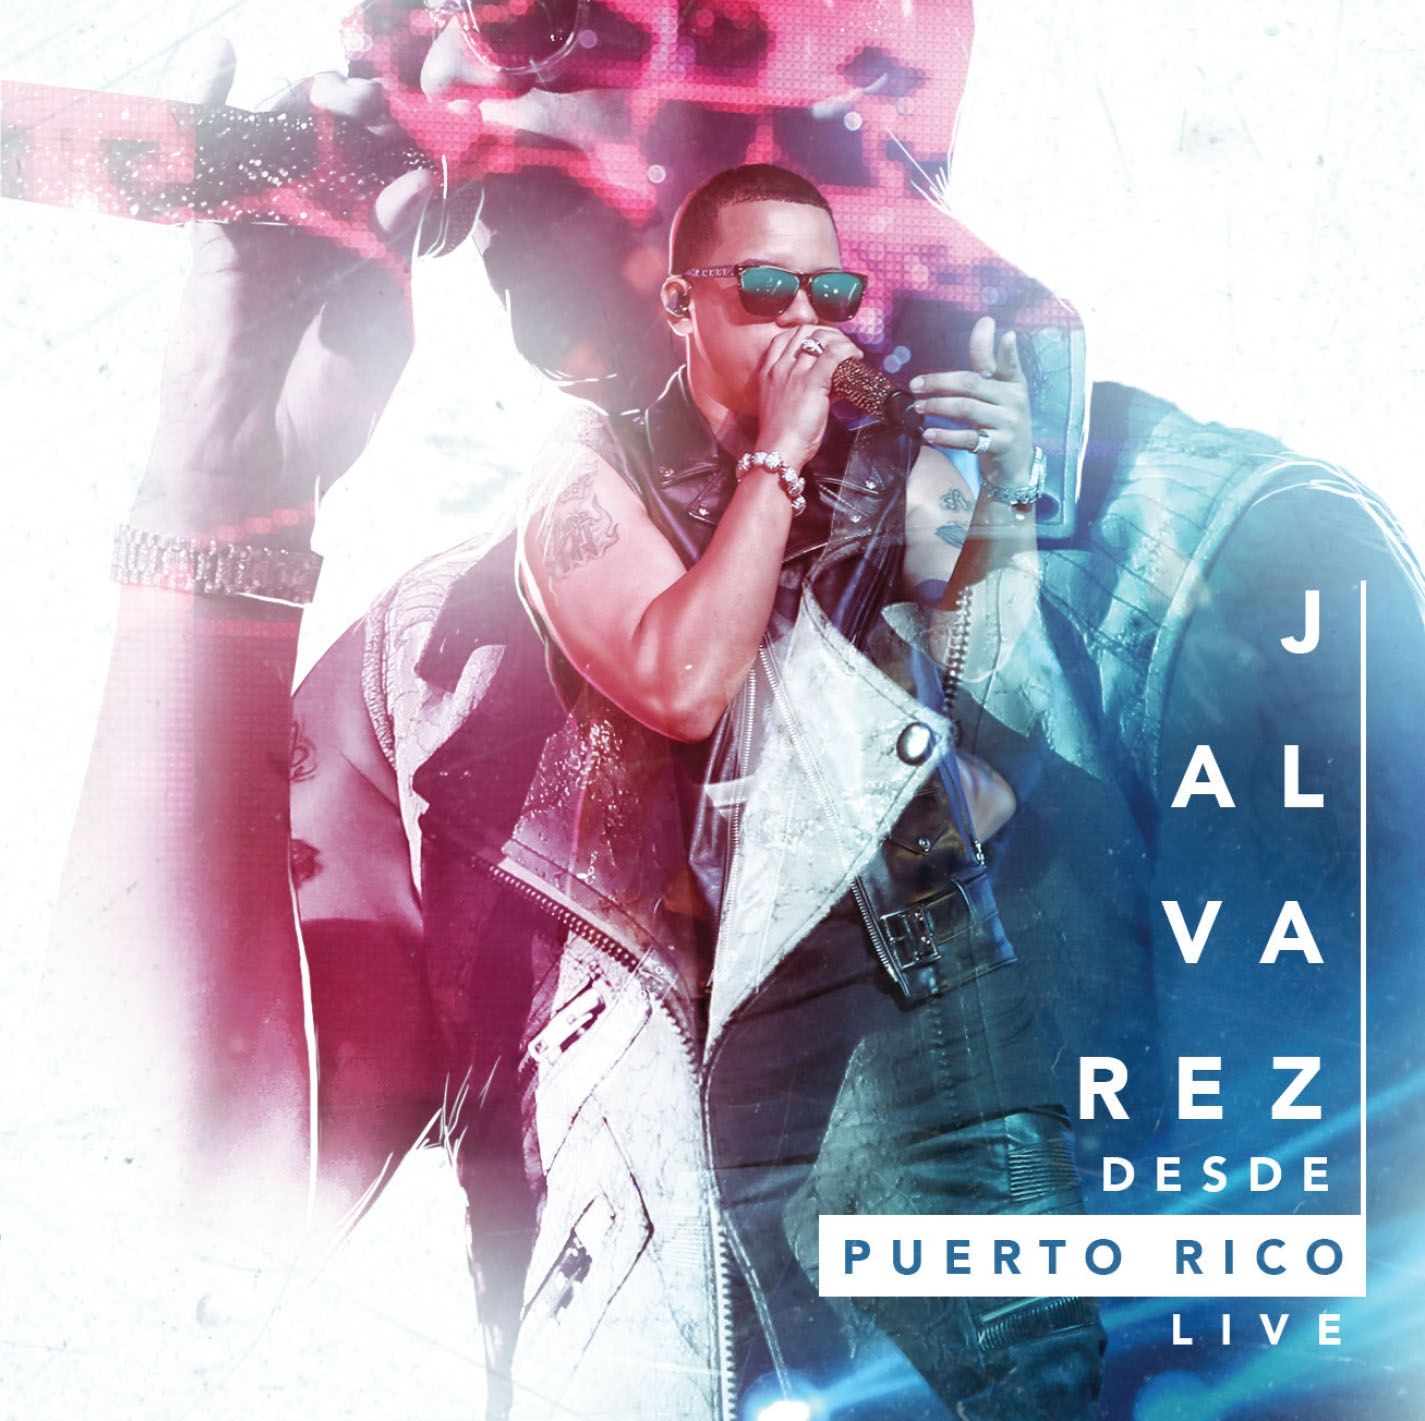 Imagem do álbum Desde Puerto Rico (Live) do(a) artista J Alvarez